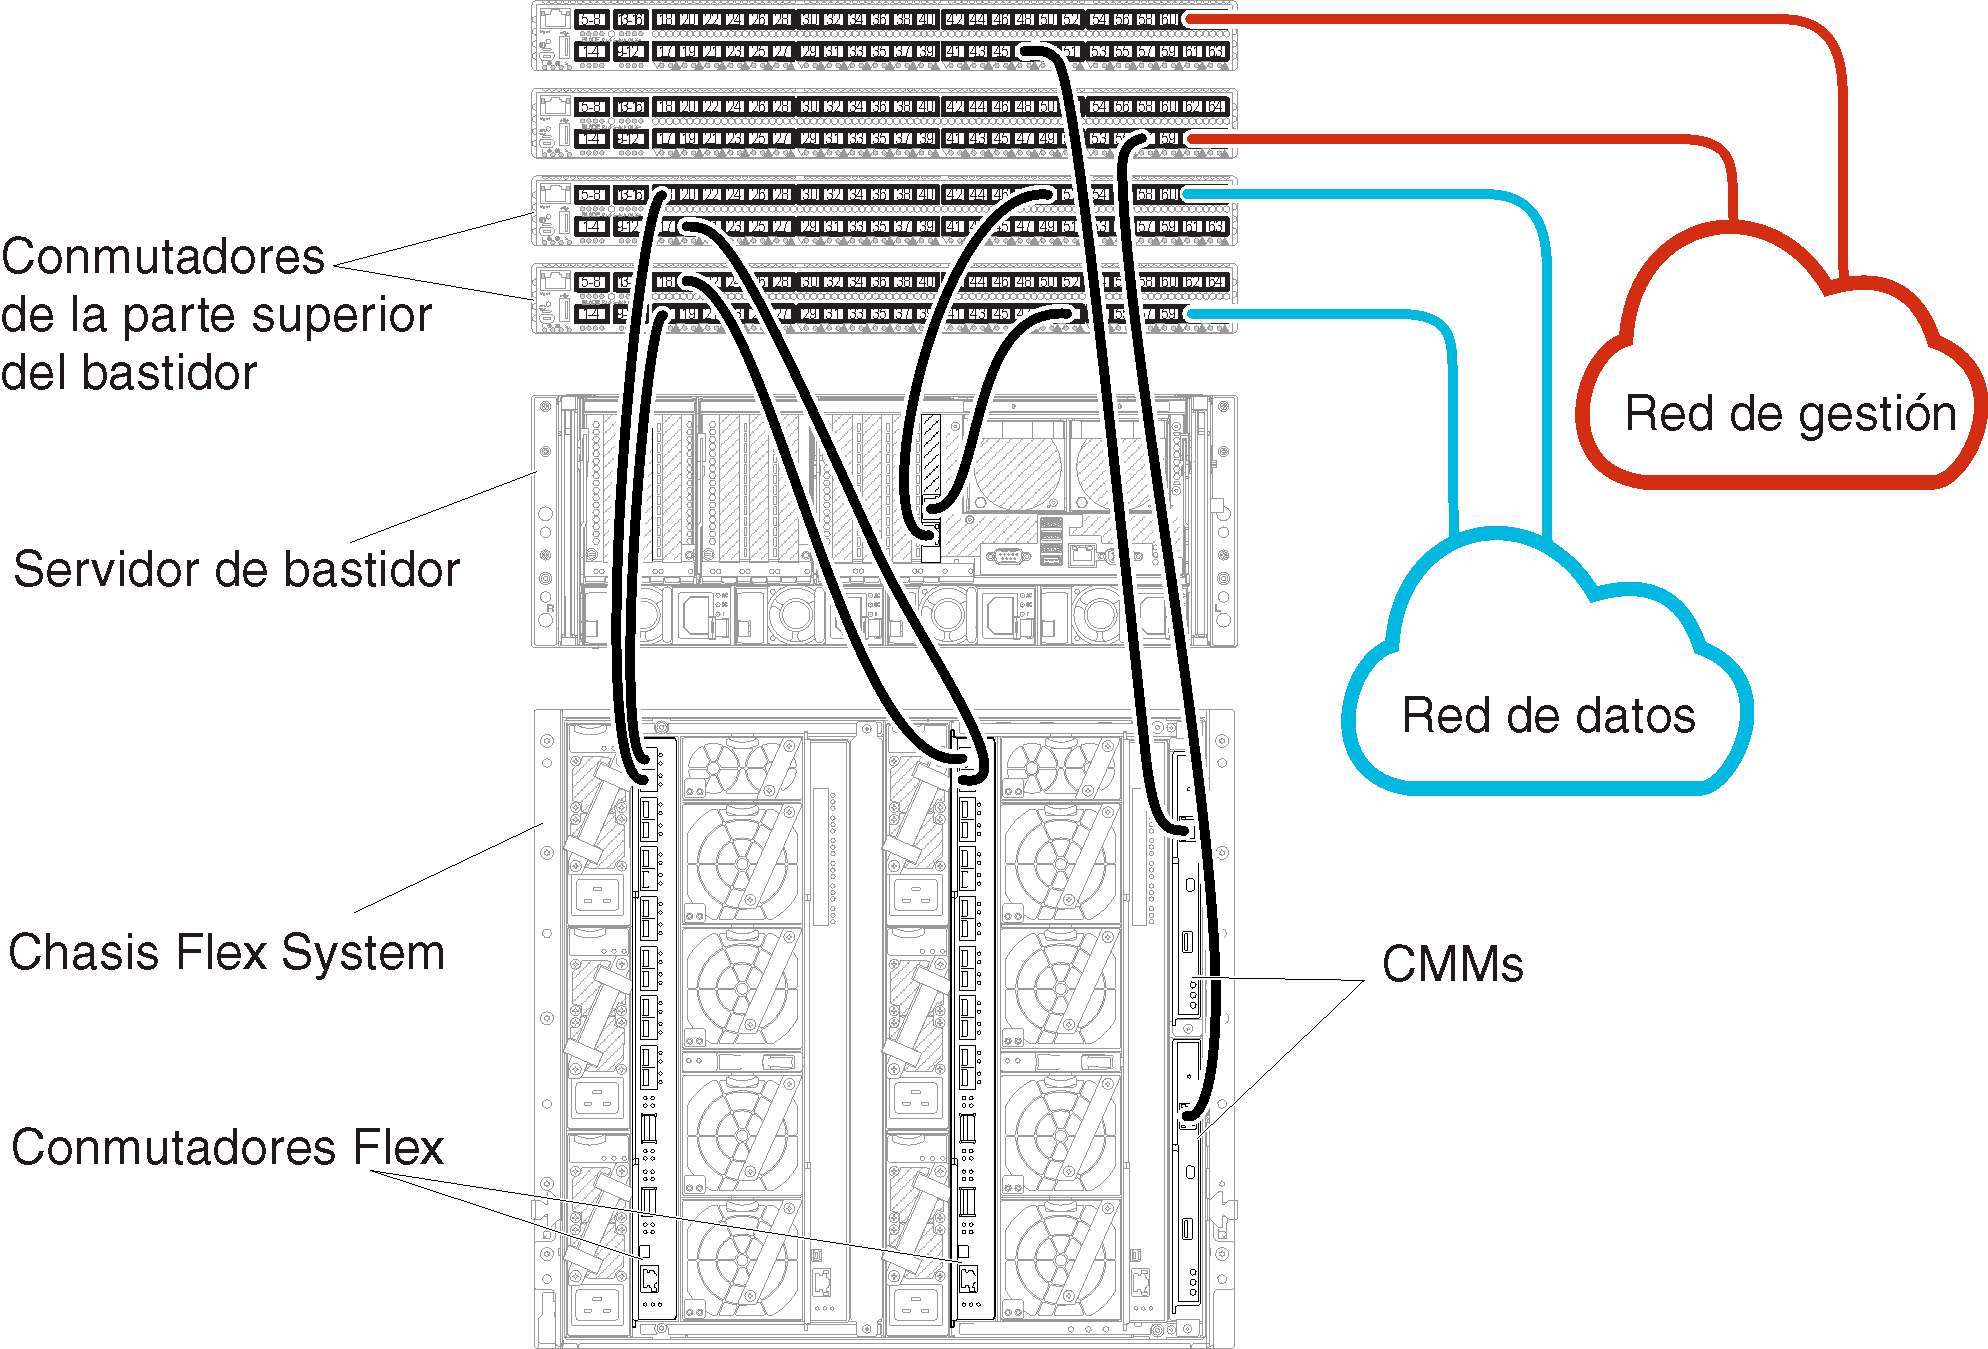 Muestra el cableado de los Conmutadores Flex y de los CMM a los conmutadores de la parte superior del bastidor para redes de datos y de gestión separadas físicamente